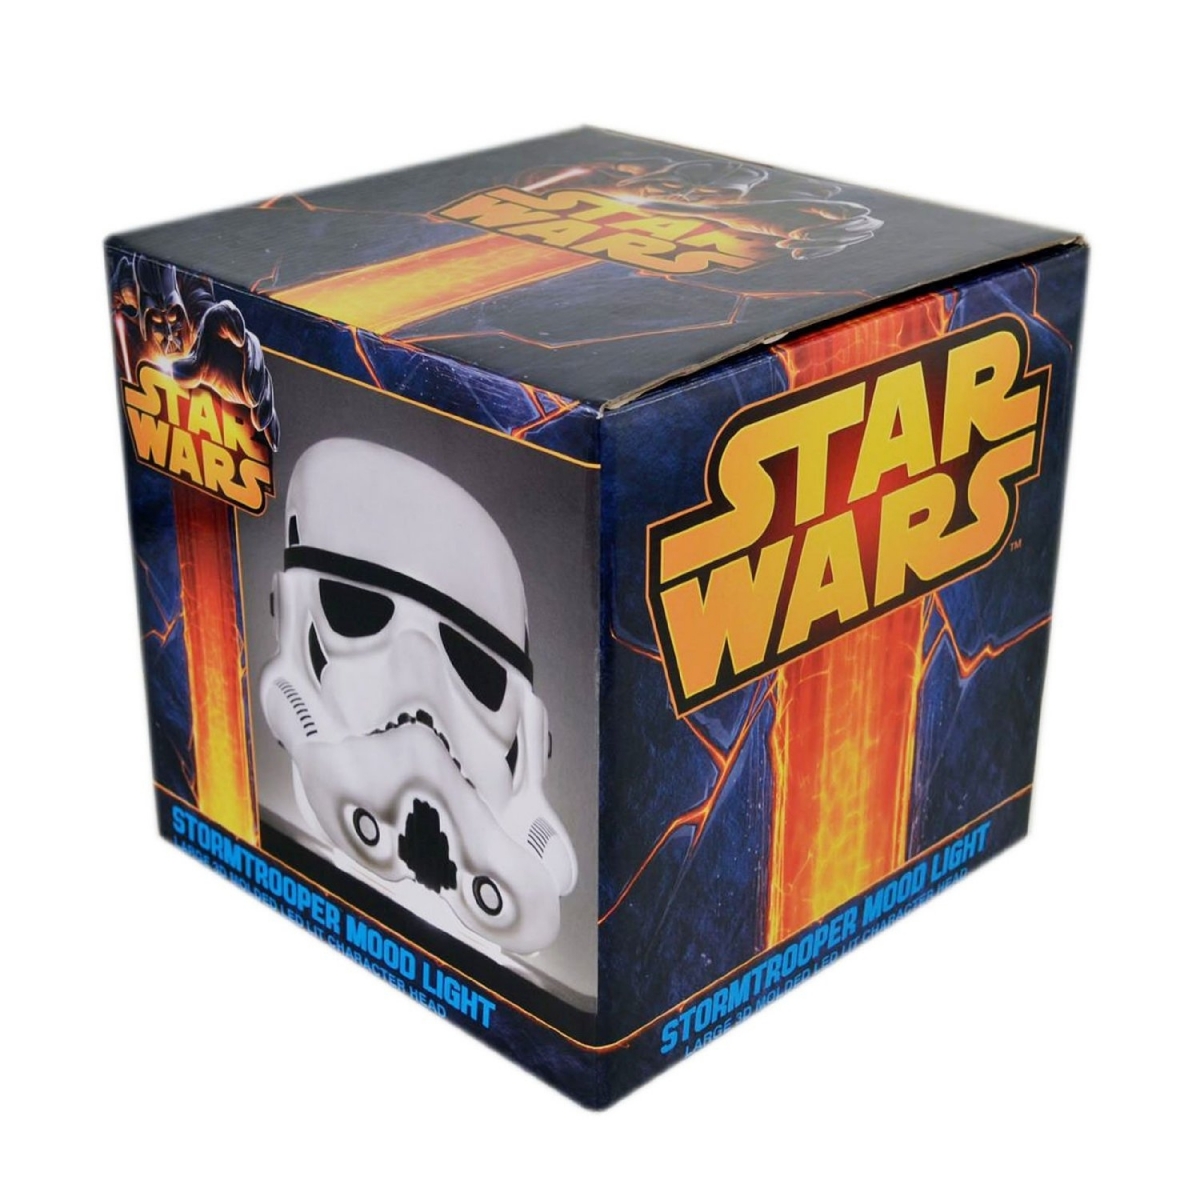 Lampe Star Wars bataille intergalactique ép. 7 à 39,90€ - Cadeau Geek- Idée  cadeau homme